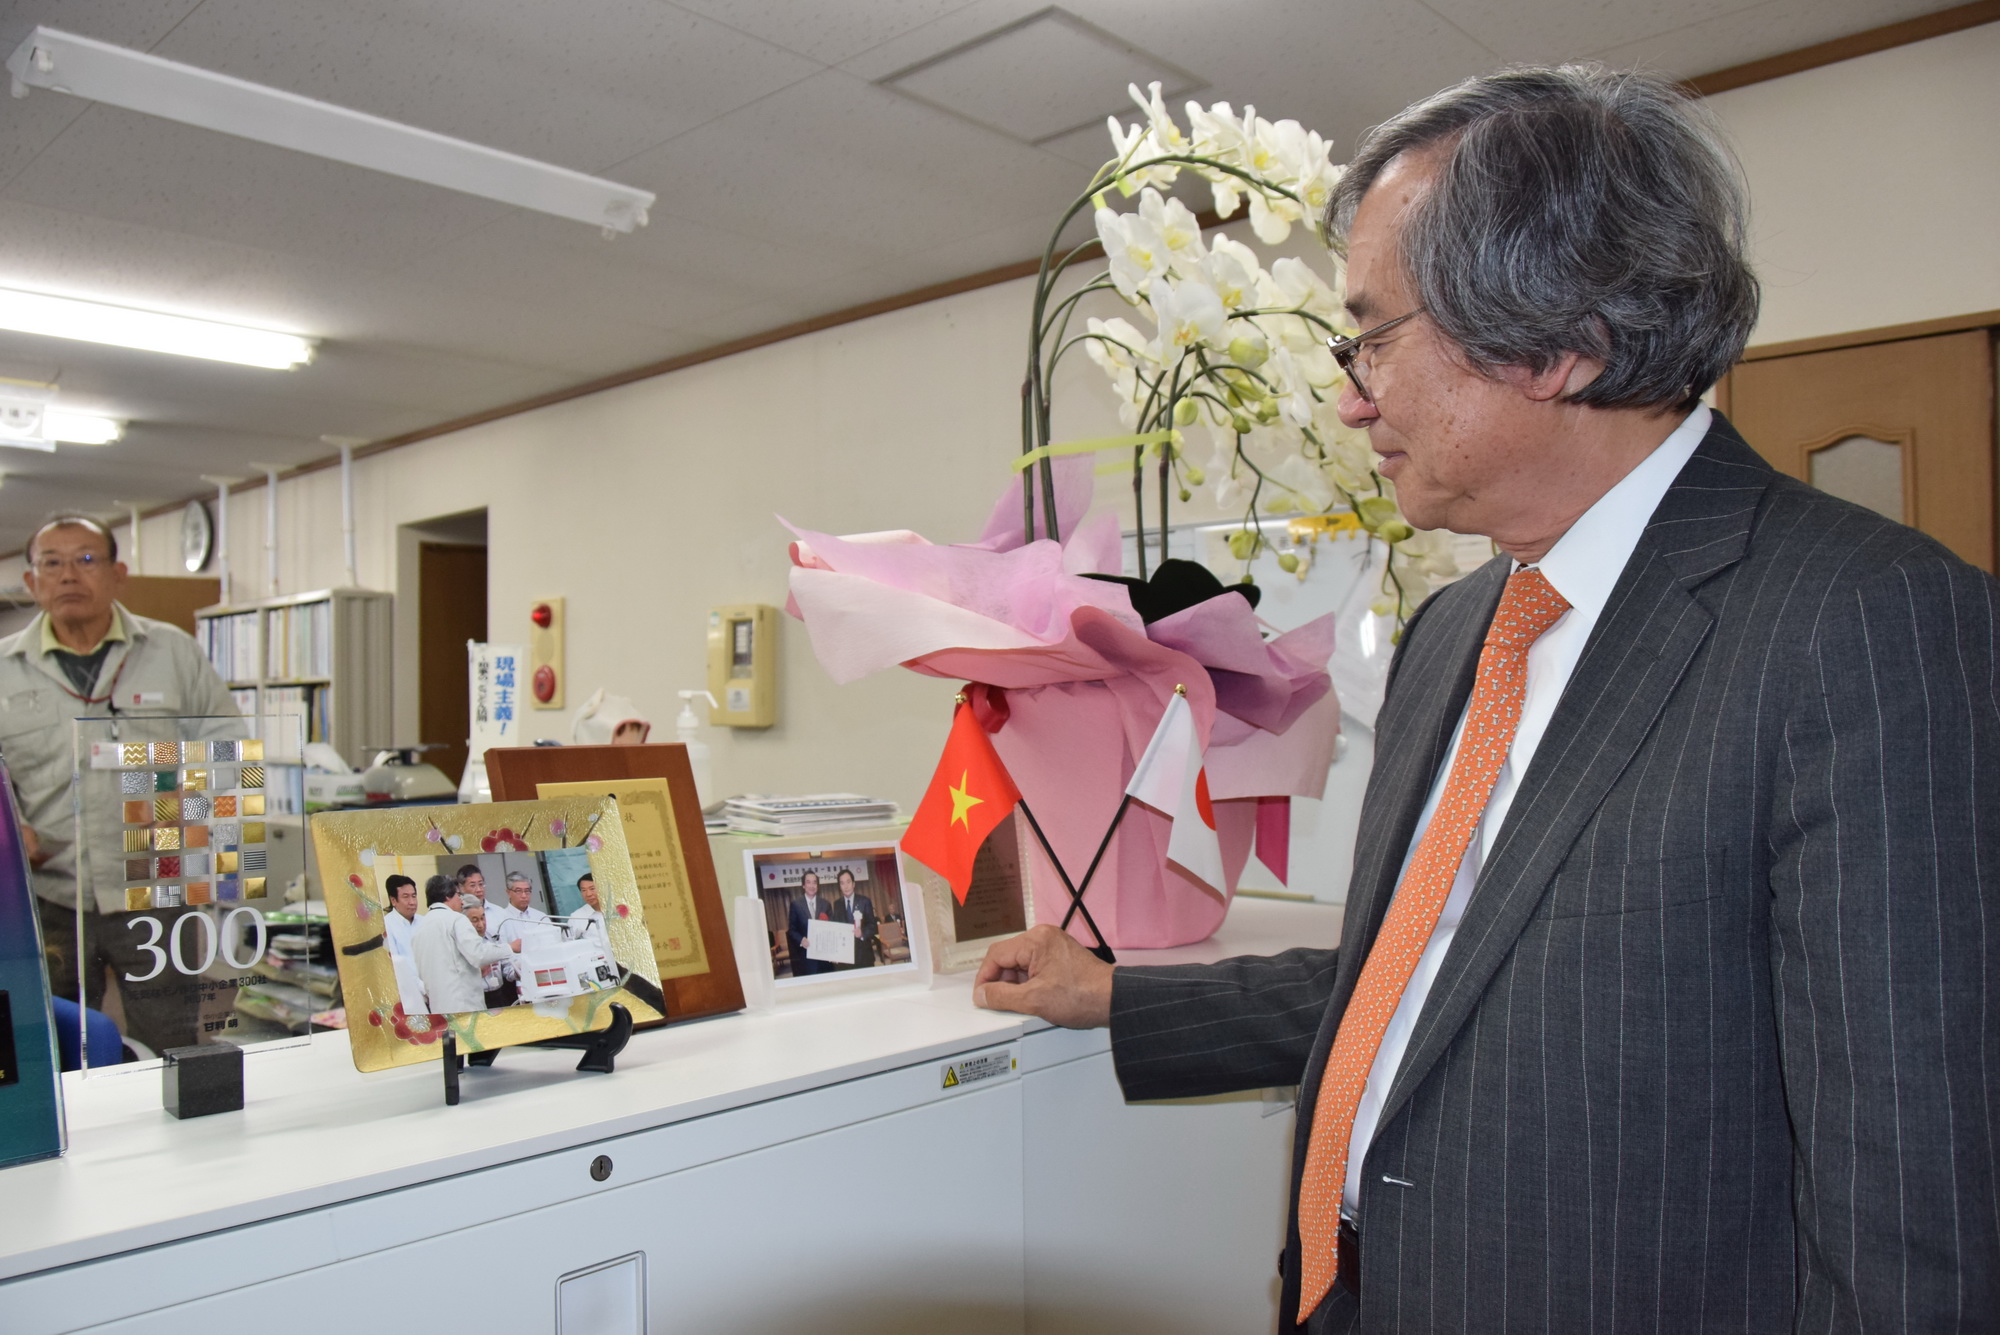 Ông Trần Ngọc Phúc giới thiệu bức ảnh kỷ niệm ghi lại ngày Nhà vua Nhật Bản đến thăm Metran. (Nguồn: Vietnam+)